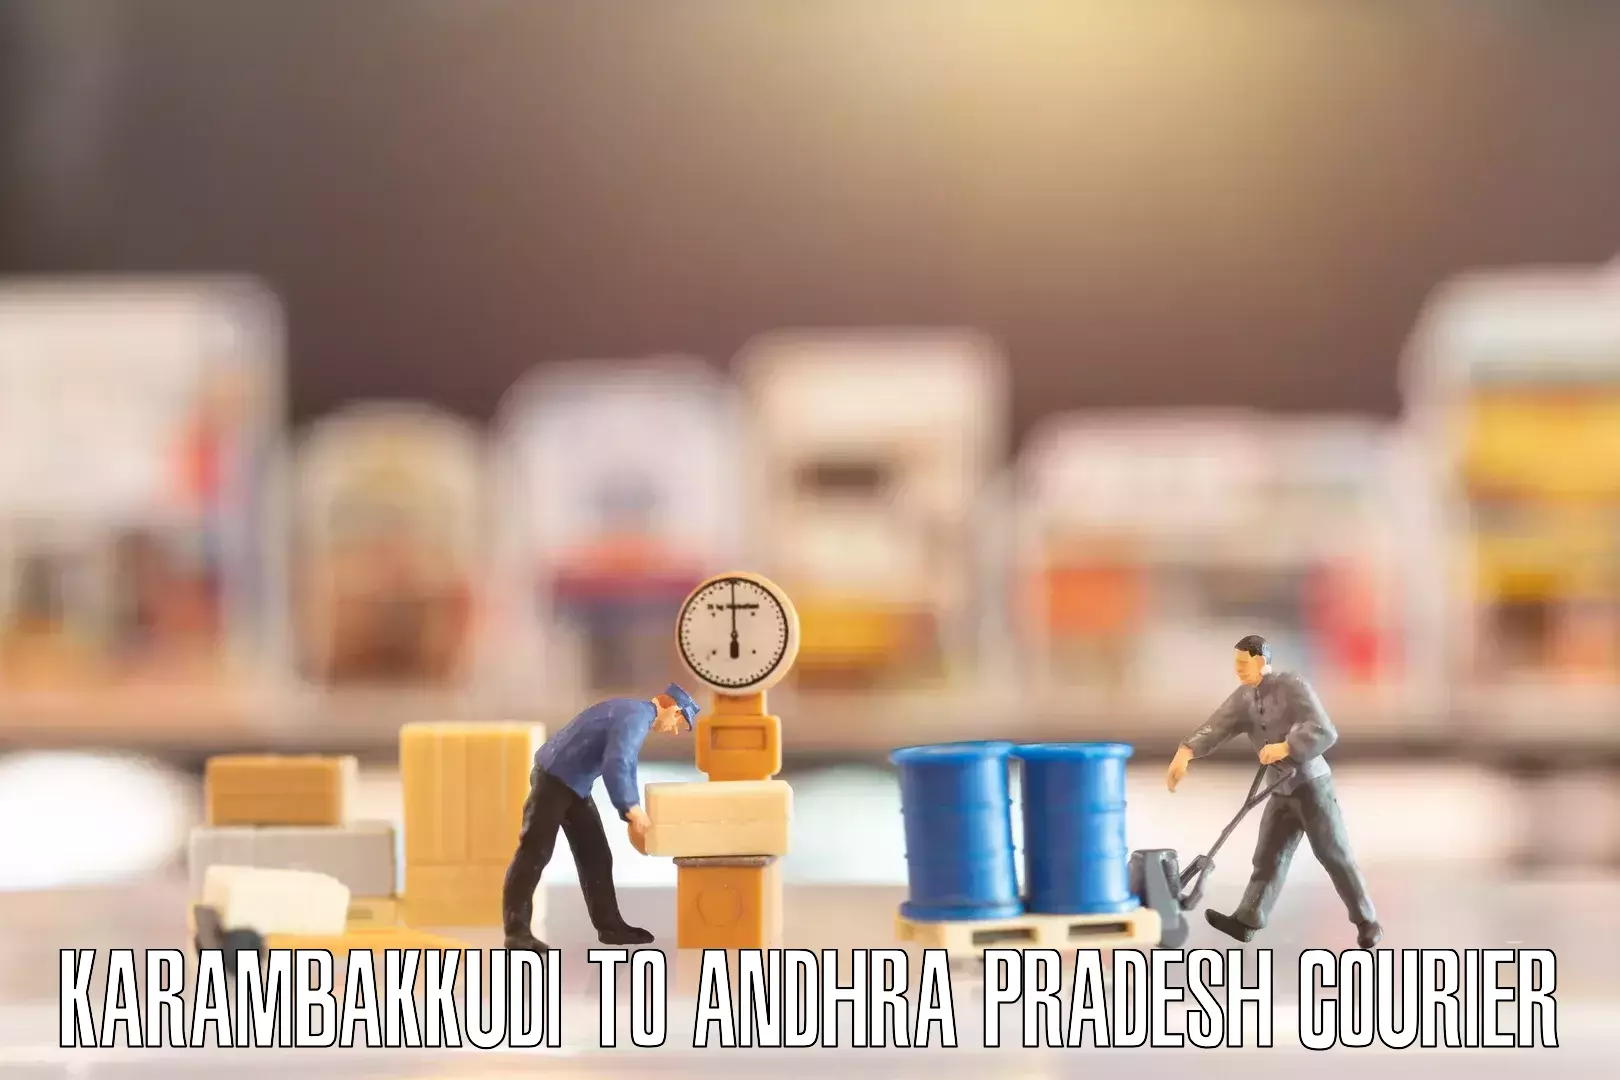 Household transport services Karambakkudi to Andhra Pradesh